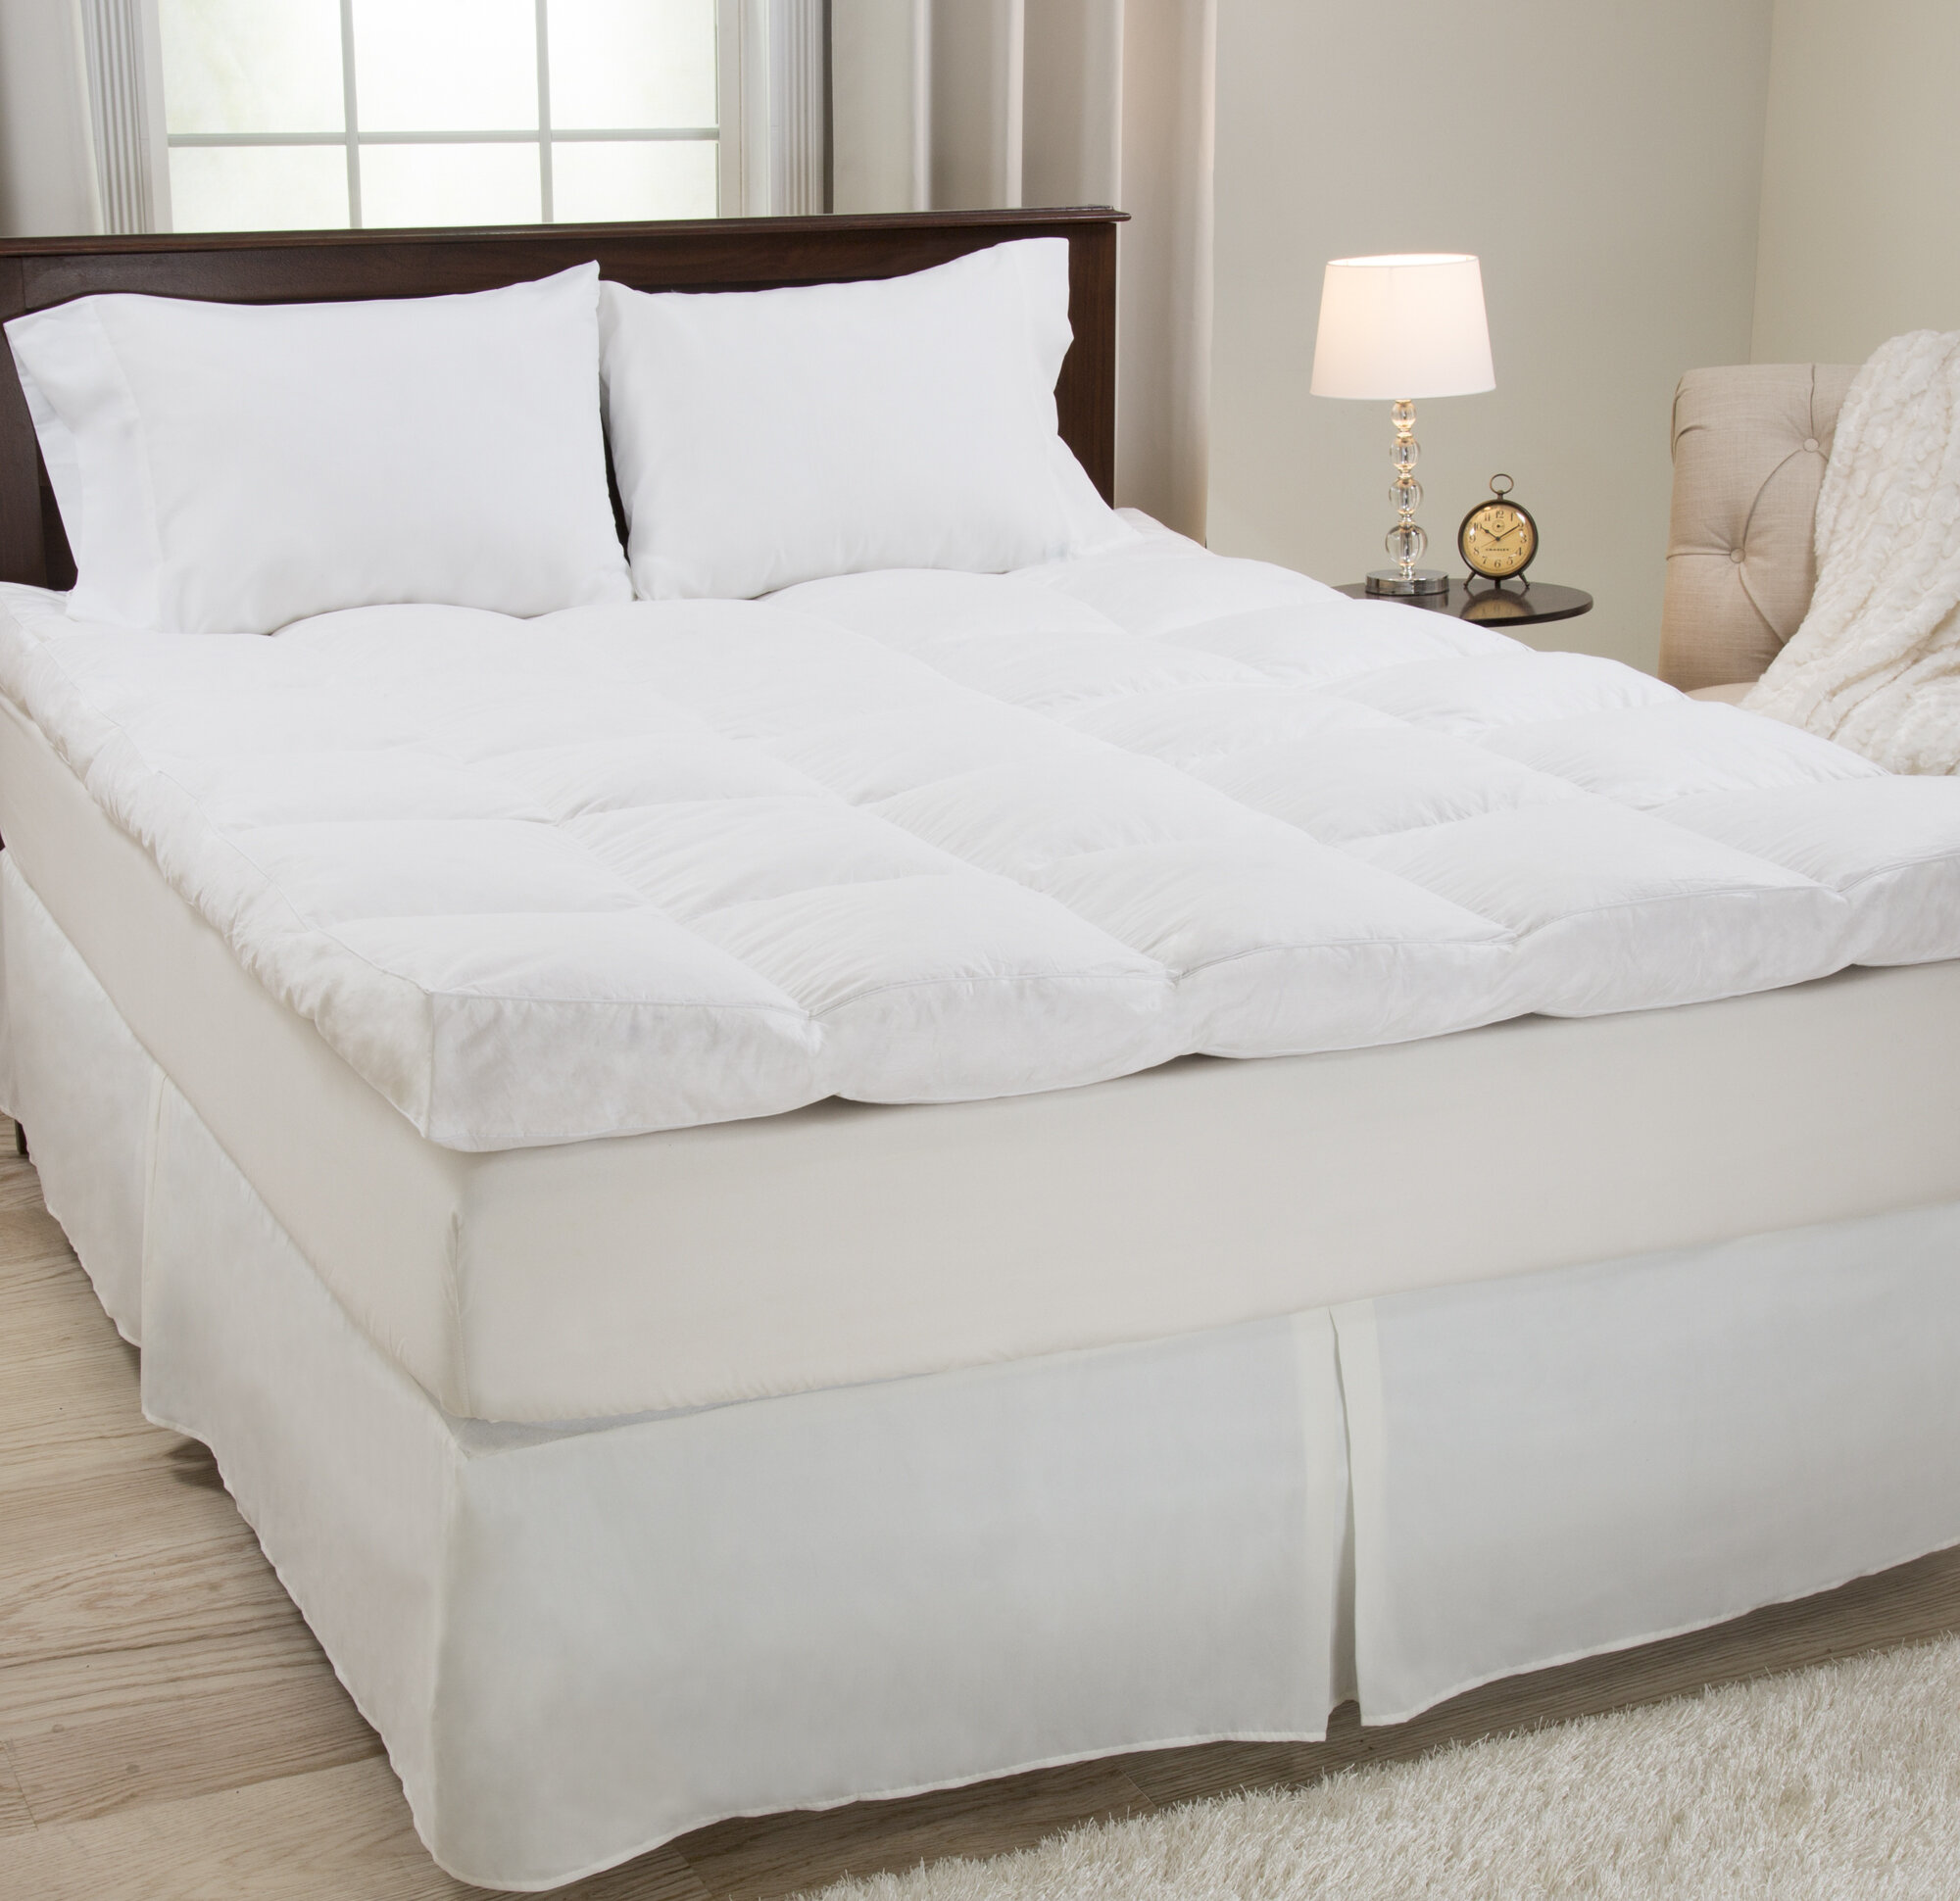 bed mattress topper twin